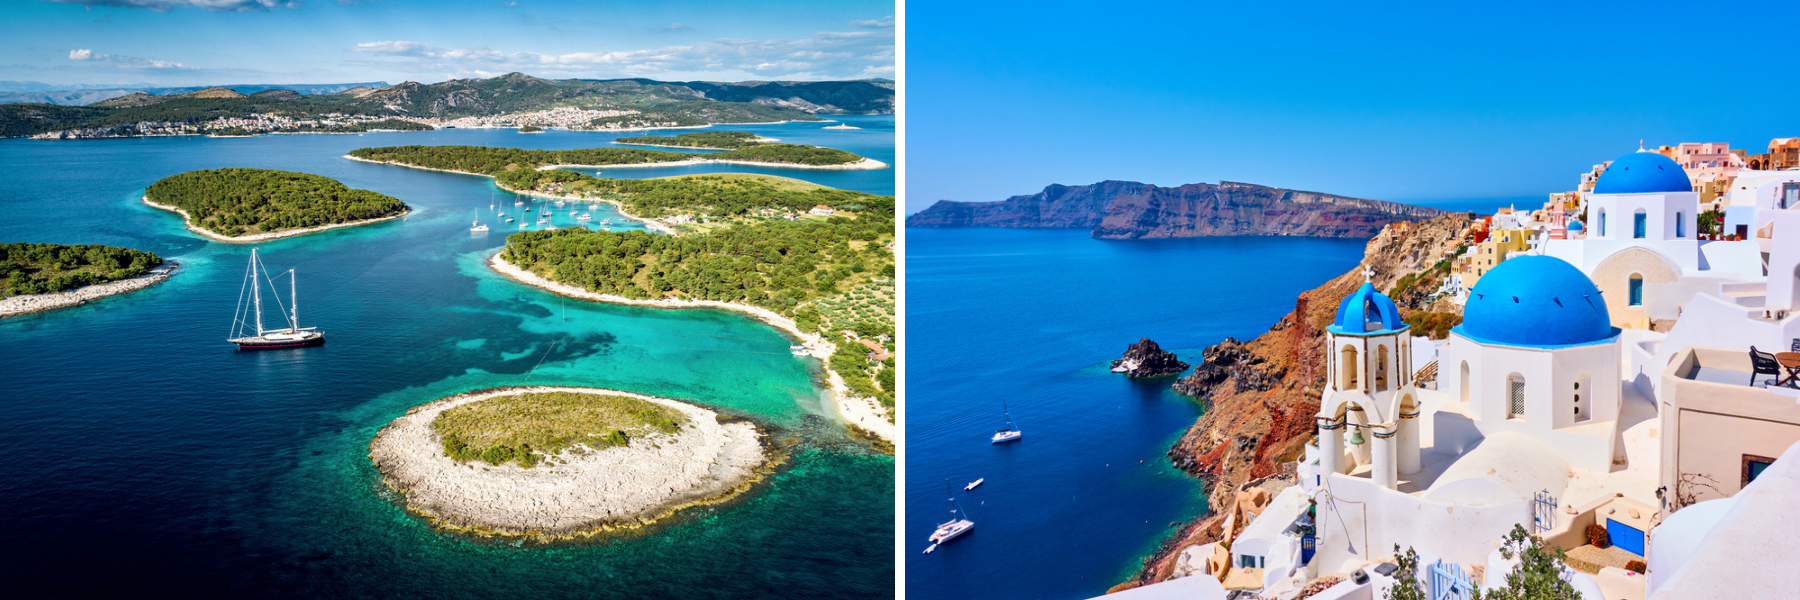 Η Κροατία και η Ελλάδα είναι νησιωτικές χώρες.